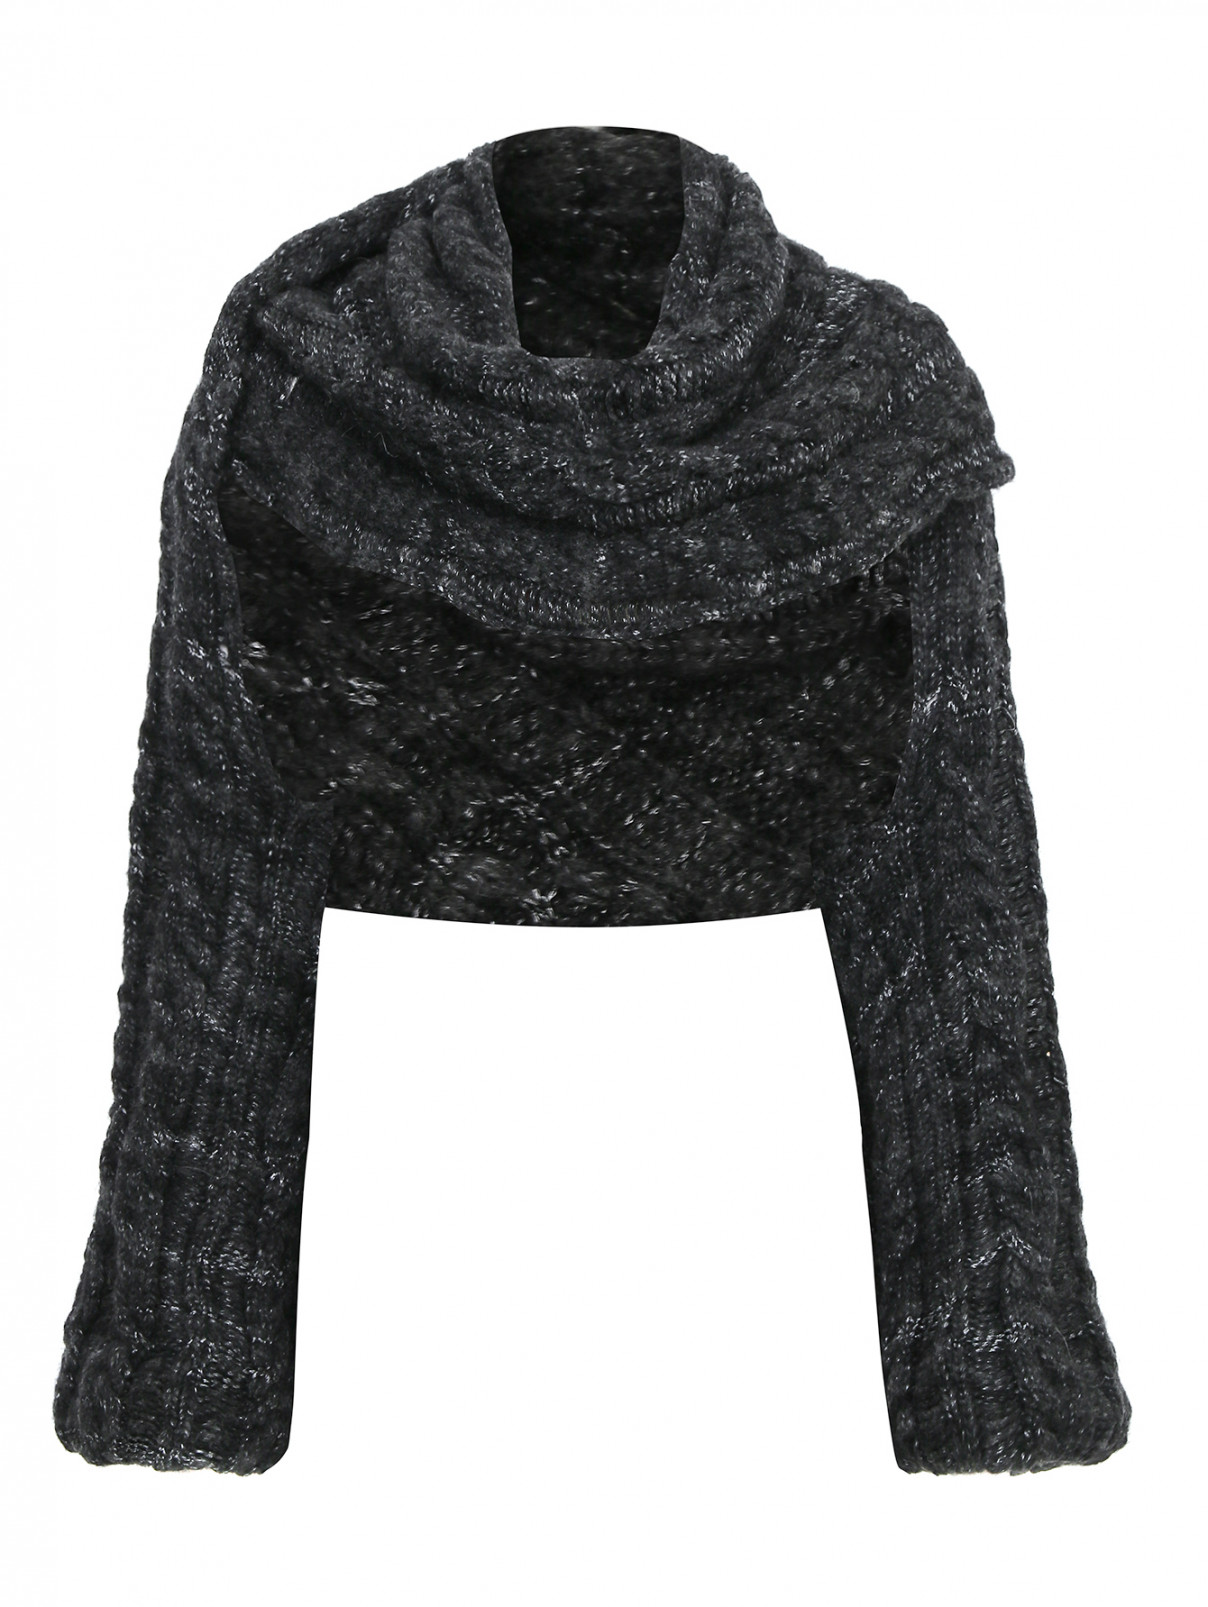 Объемный шарф-рукава из шерсти и мохера Antonio Marras  –  Общий вид  – Цвет:  Серый